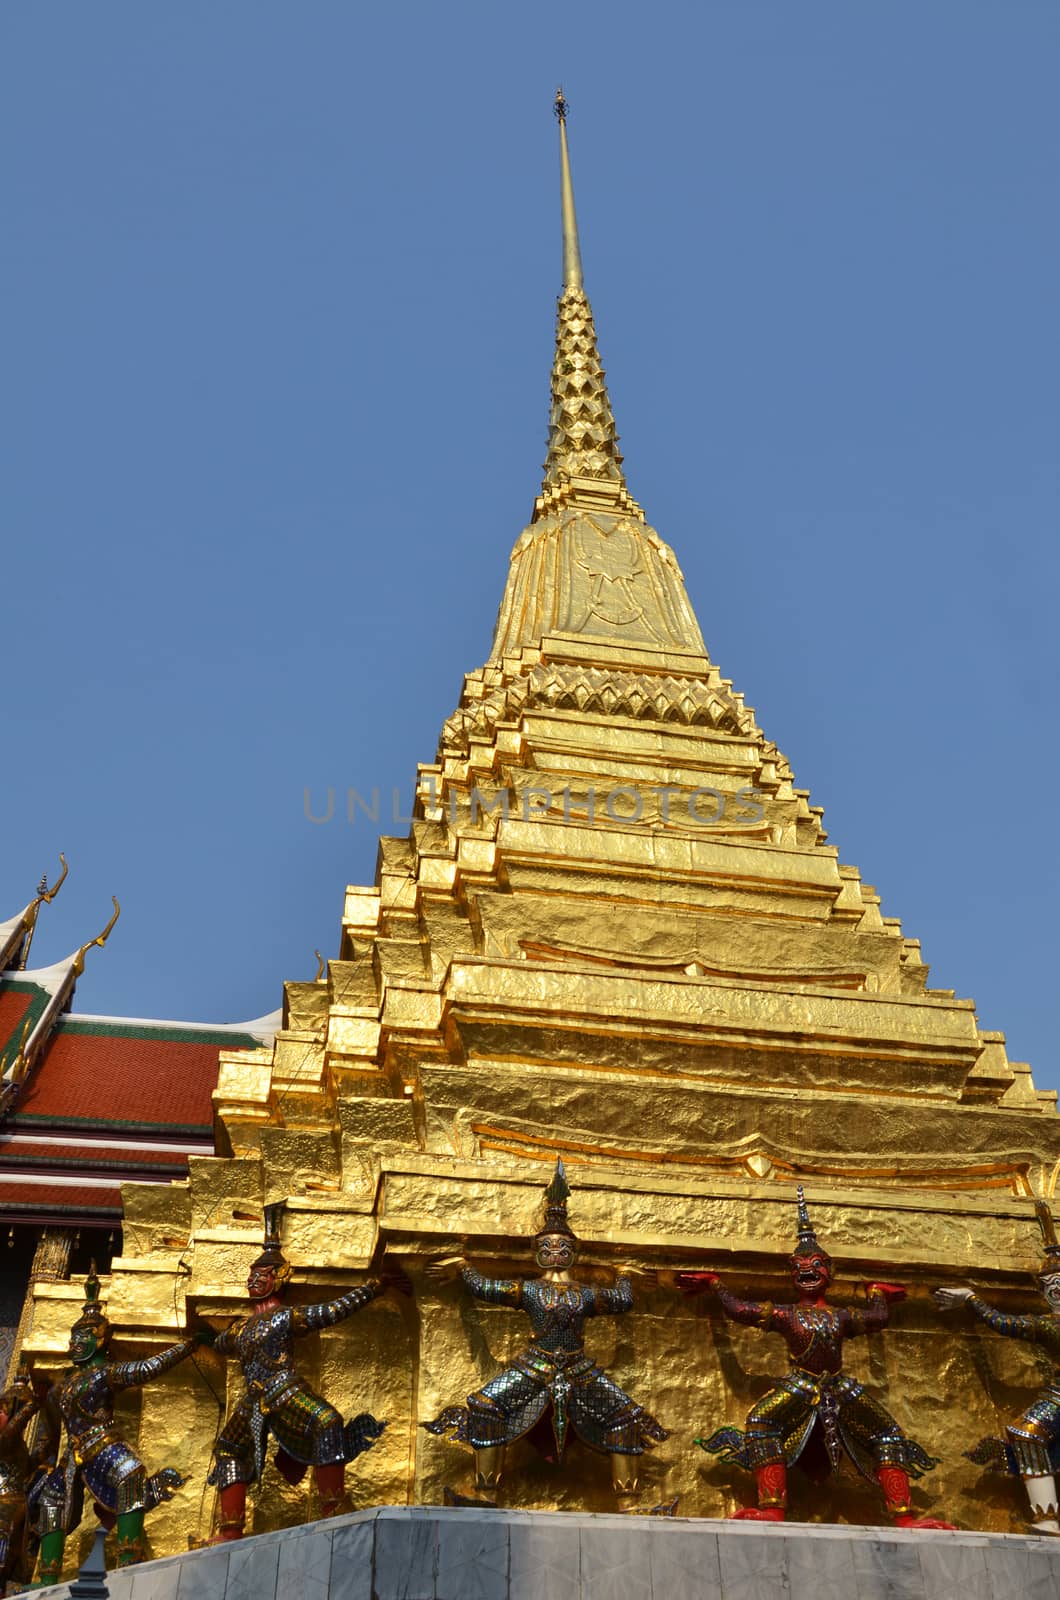 Golden pagoda in Grand Palace, Bangkok, Thailand